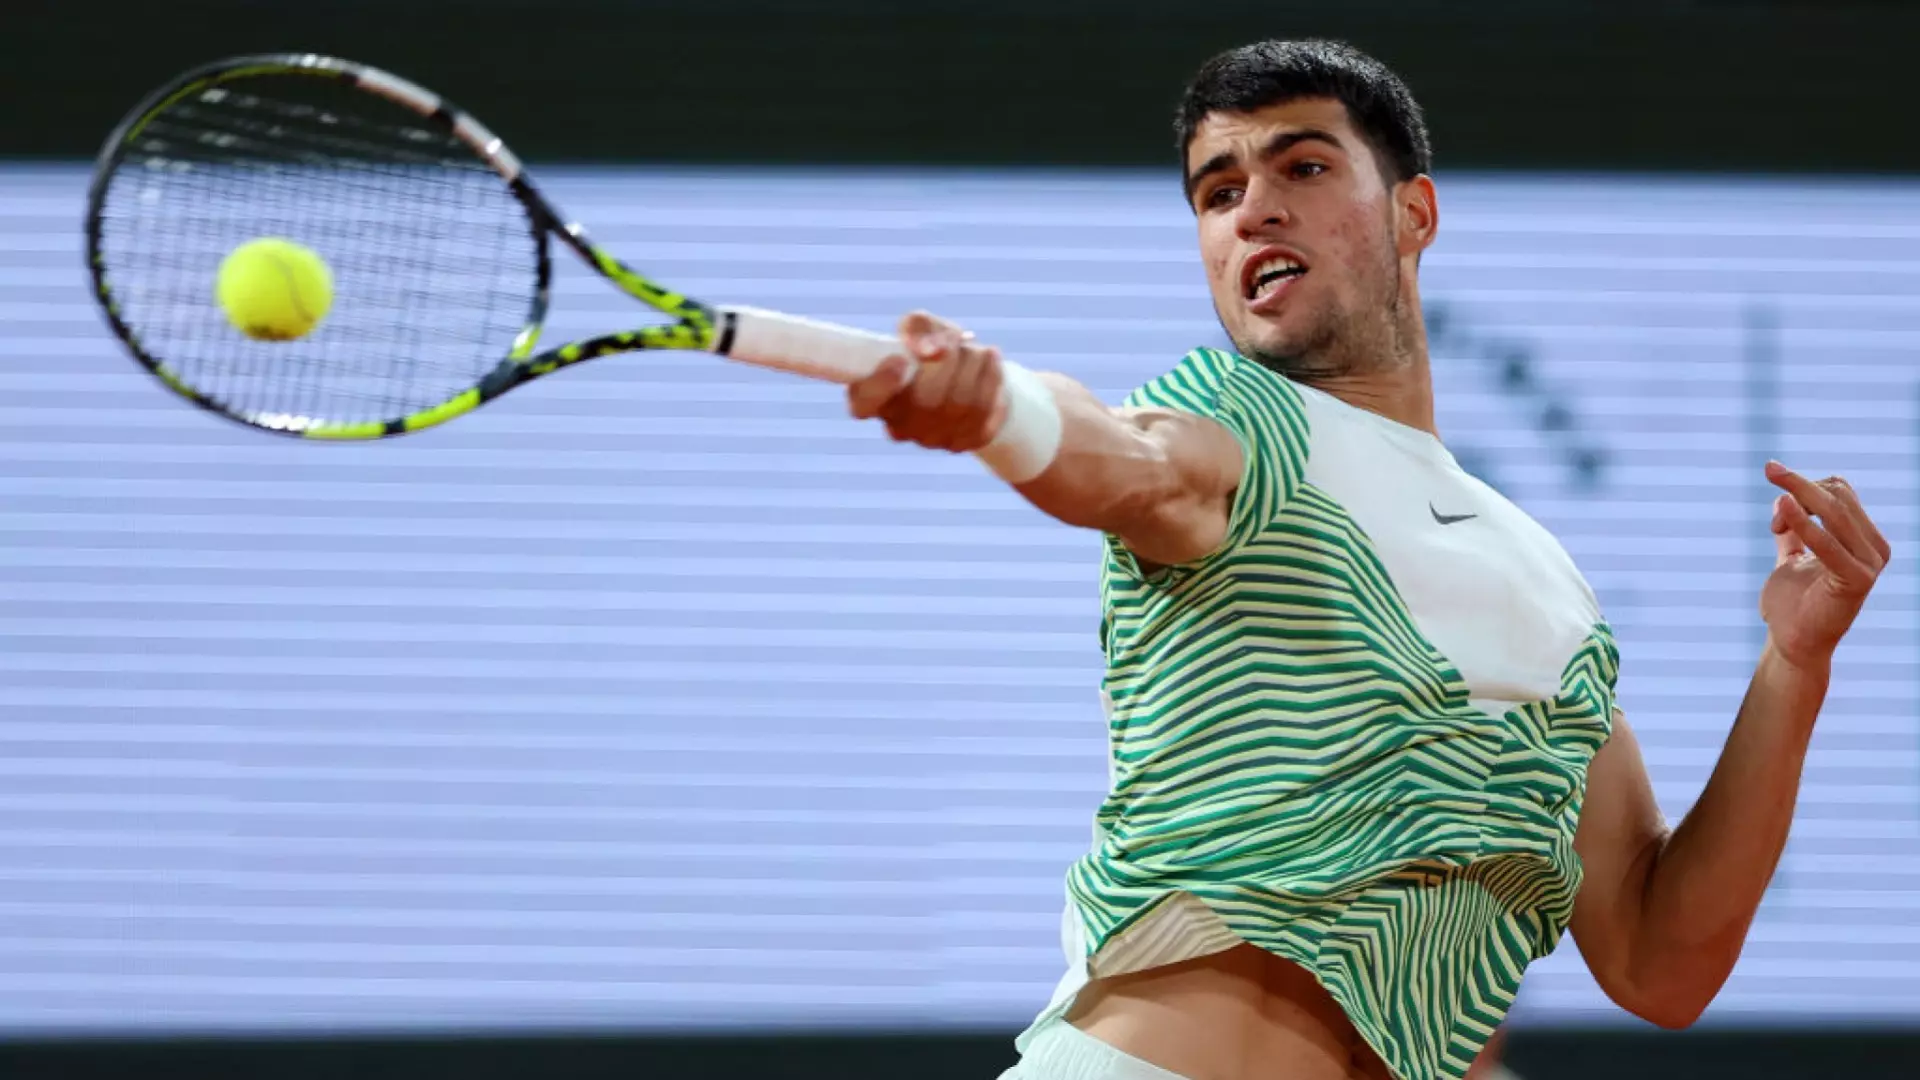 Roland Garros, Carlos Alcaraz conquista gli ottavi di finale: ora lo attende Musetti